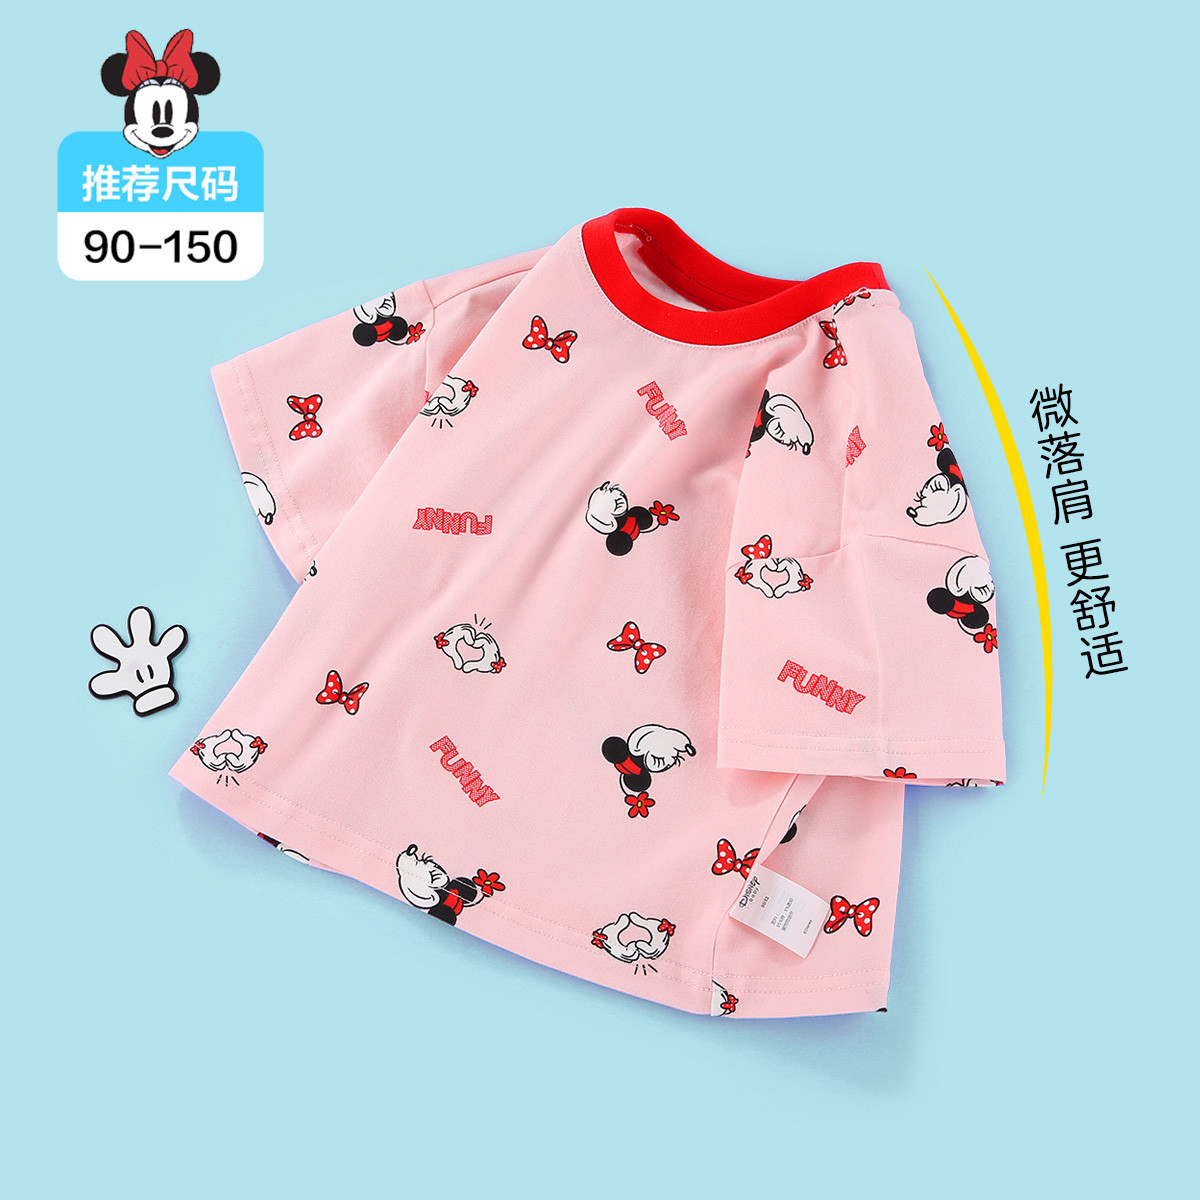 Disney 迪士尼 婴幼儿女童短袖t恤 110-160码 39.9元